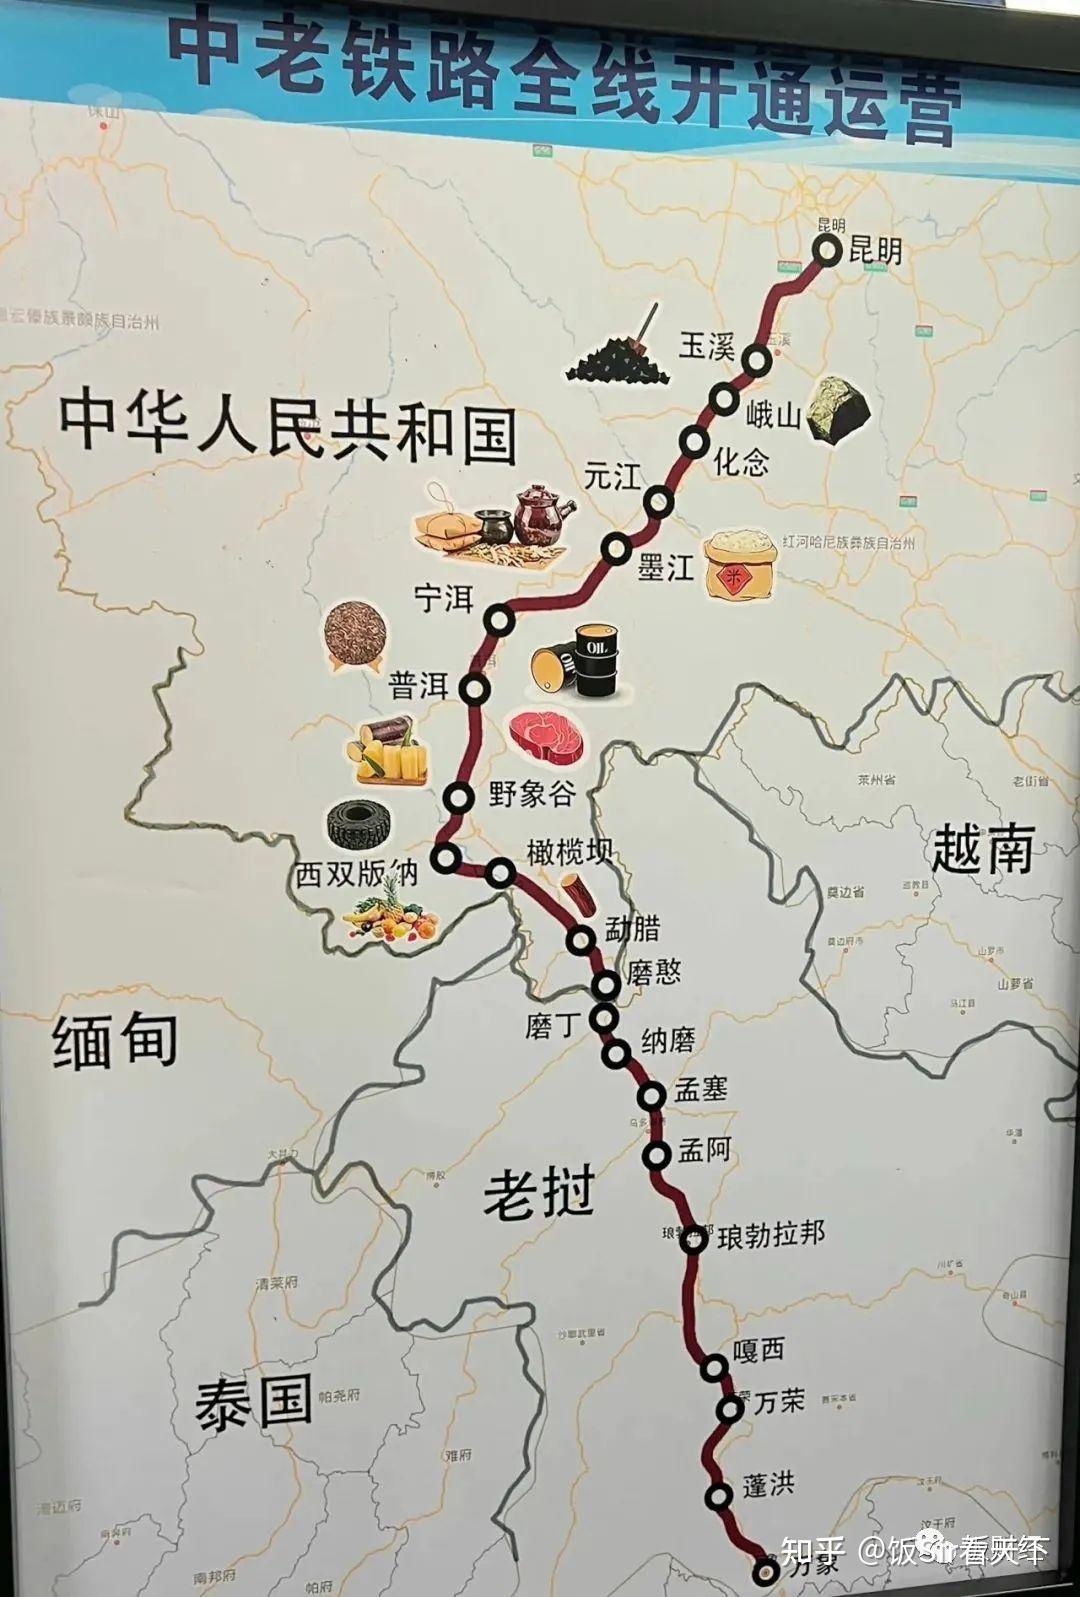 中老柬铁路路线图图片